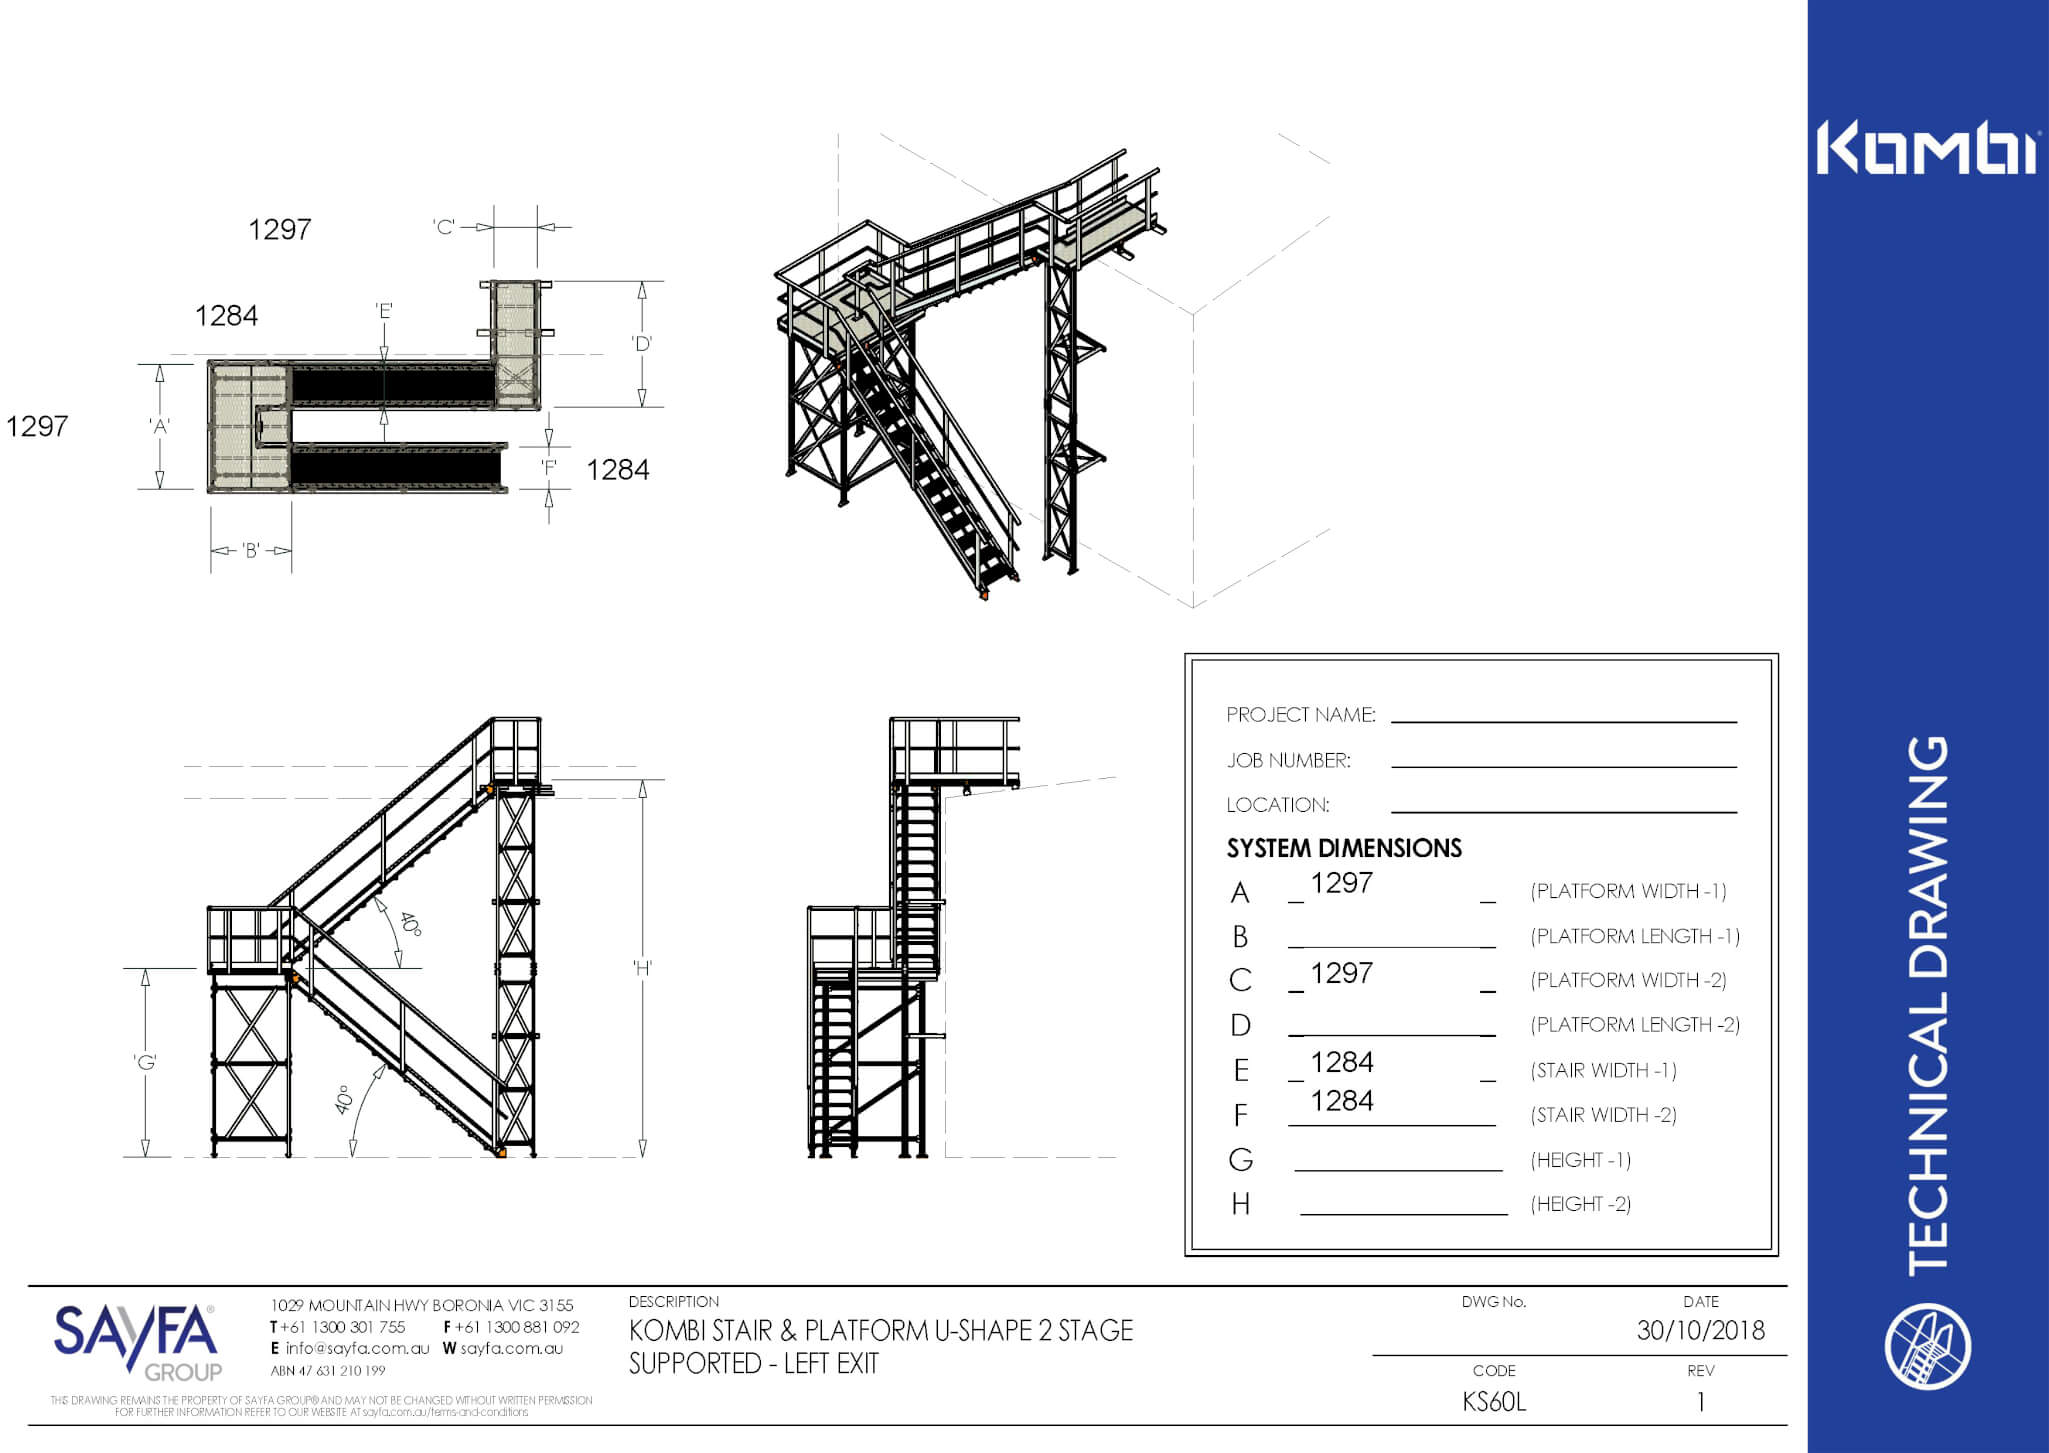 Kombi modular access stairs and access platforms